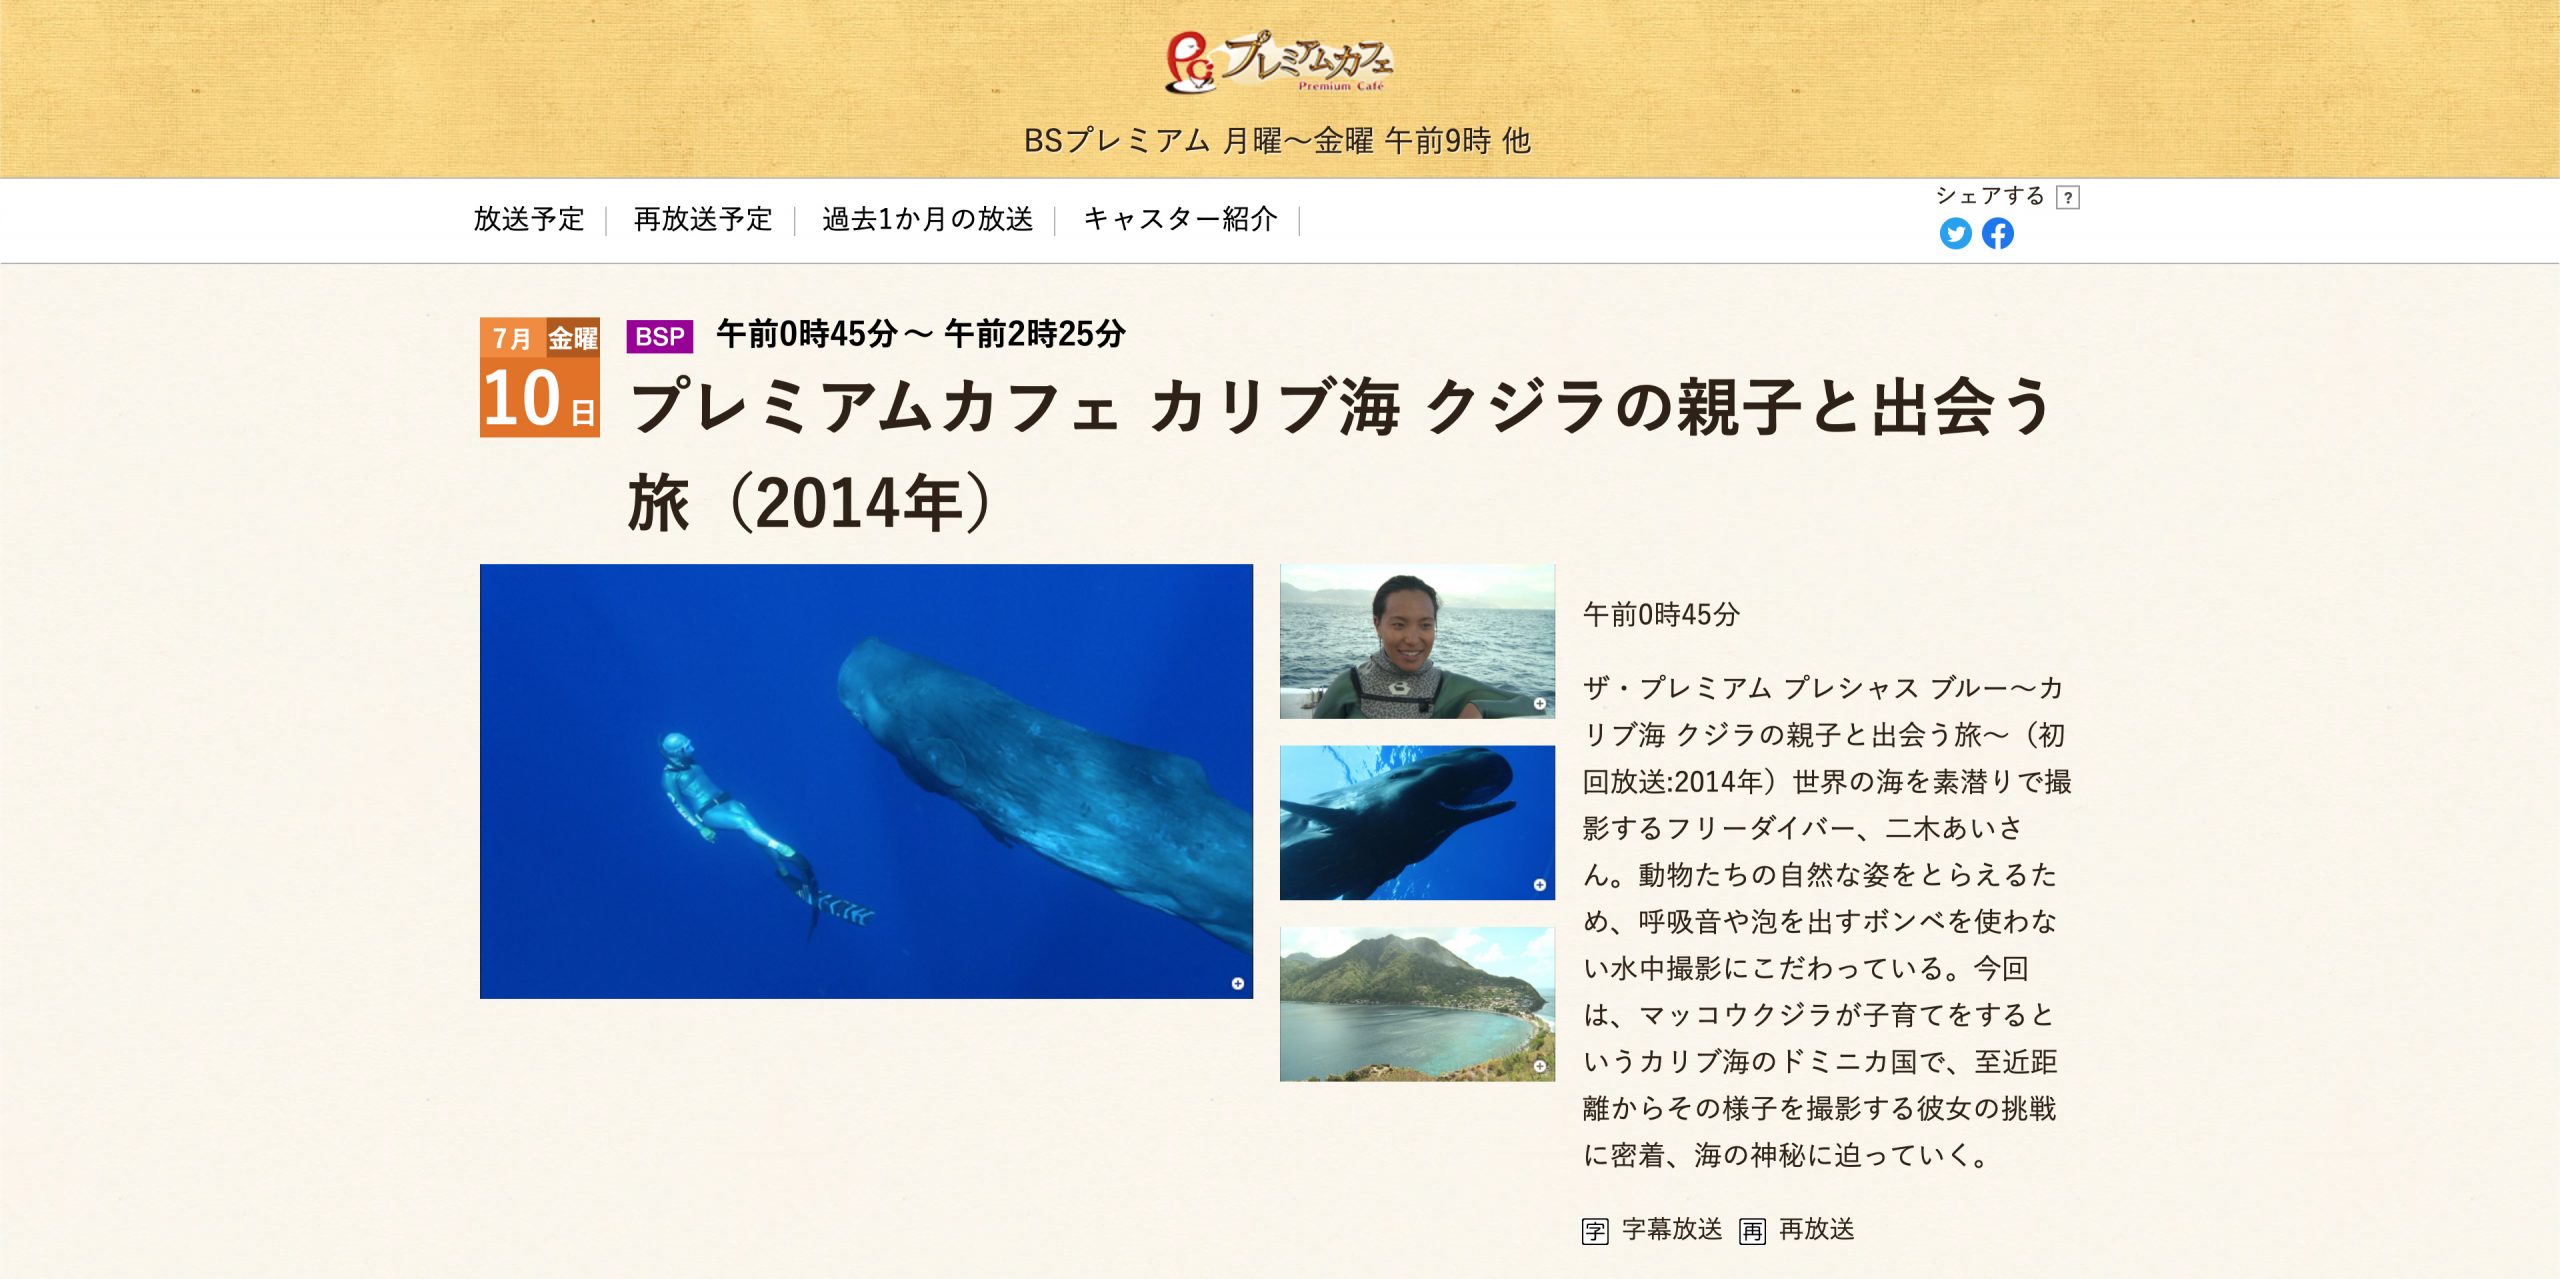 年7月10日 金 Nhk Bsプレミアム プレミアムカフェ カリブ海 クジラの親子と出会う旅 14年 再放送 Nhk Bs Premium Tv Documentary Re Broadcast Ai Futaki